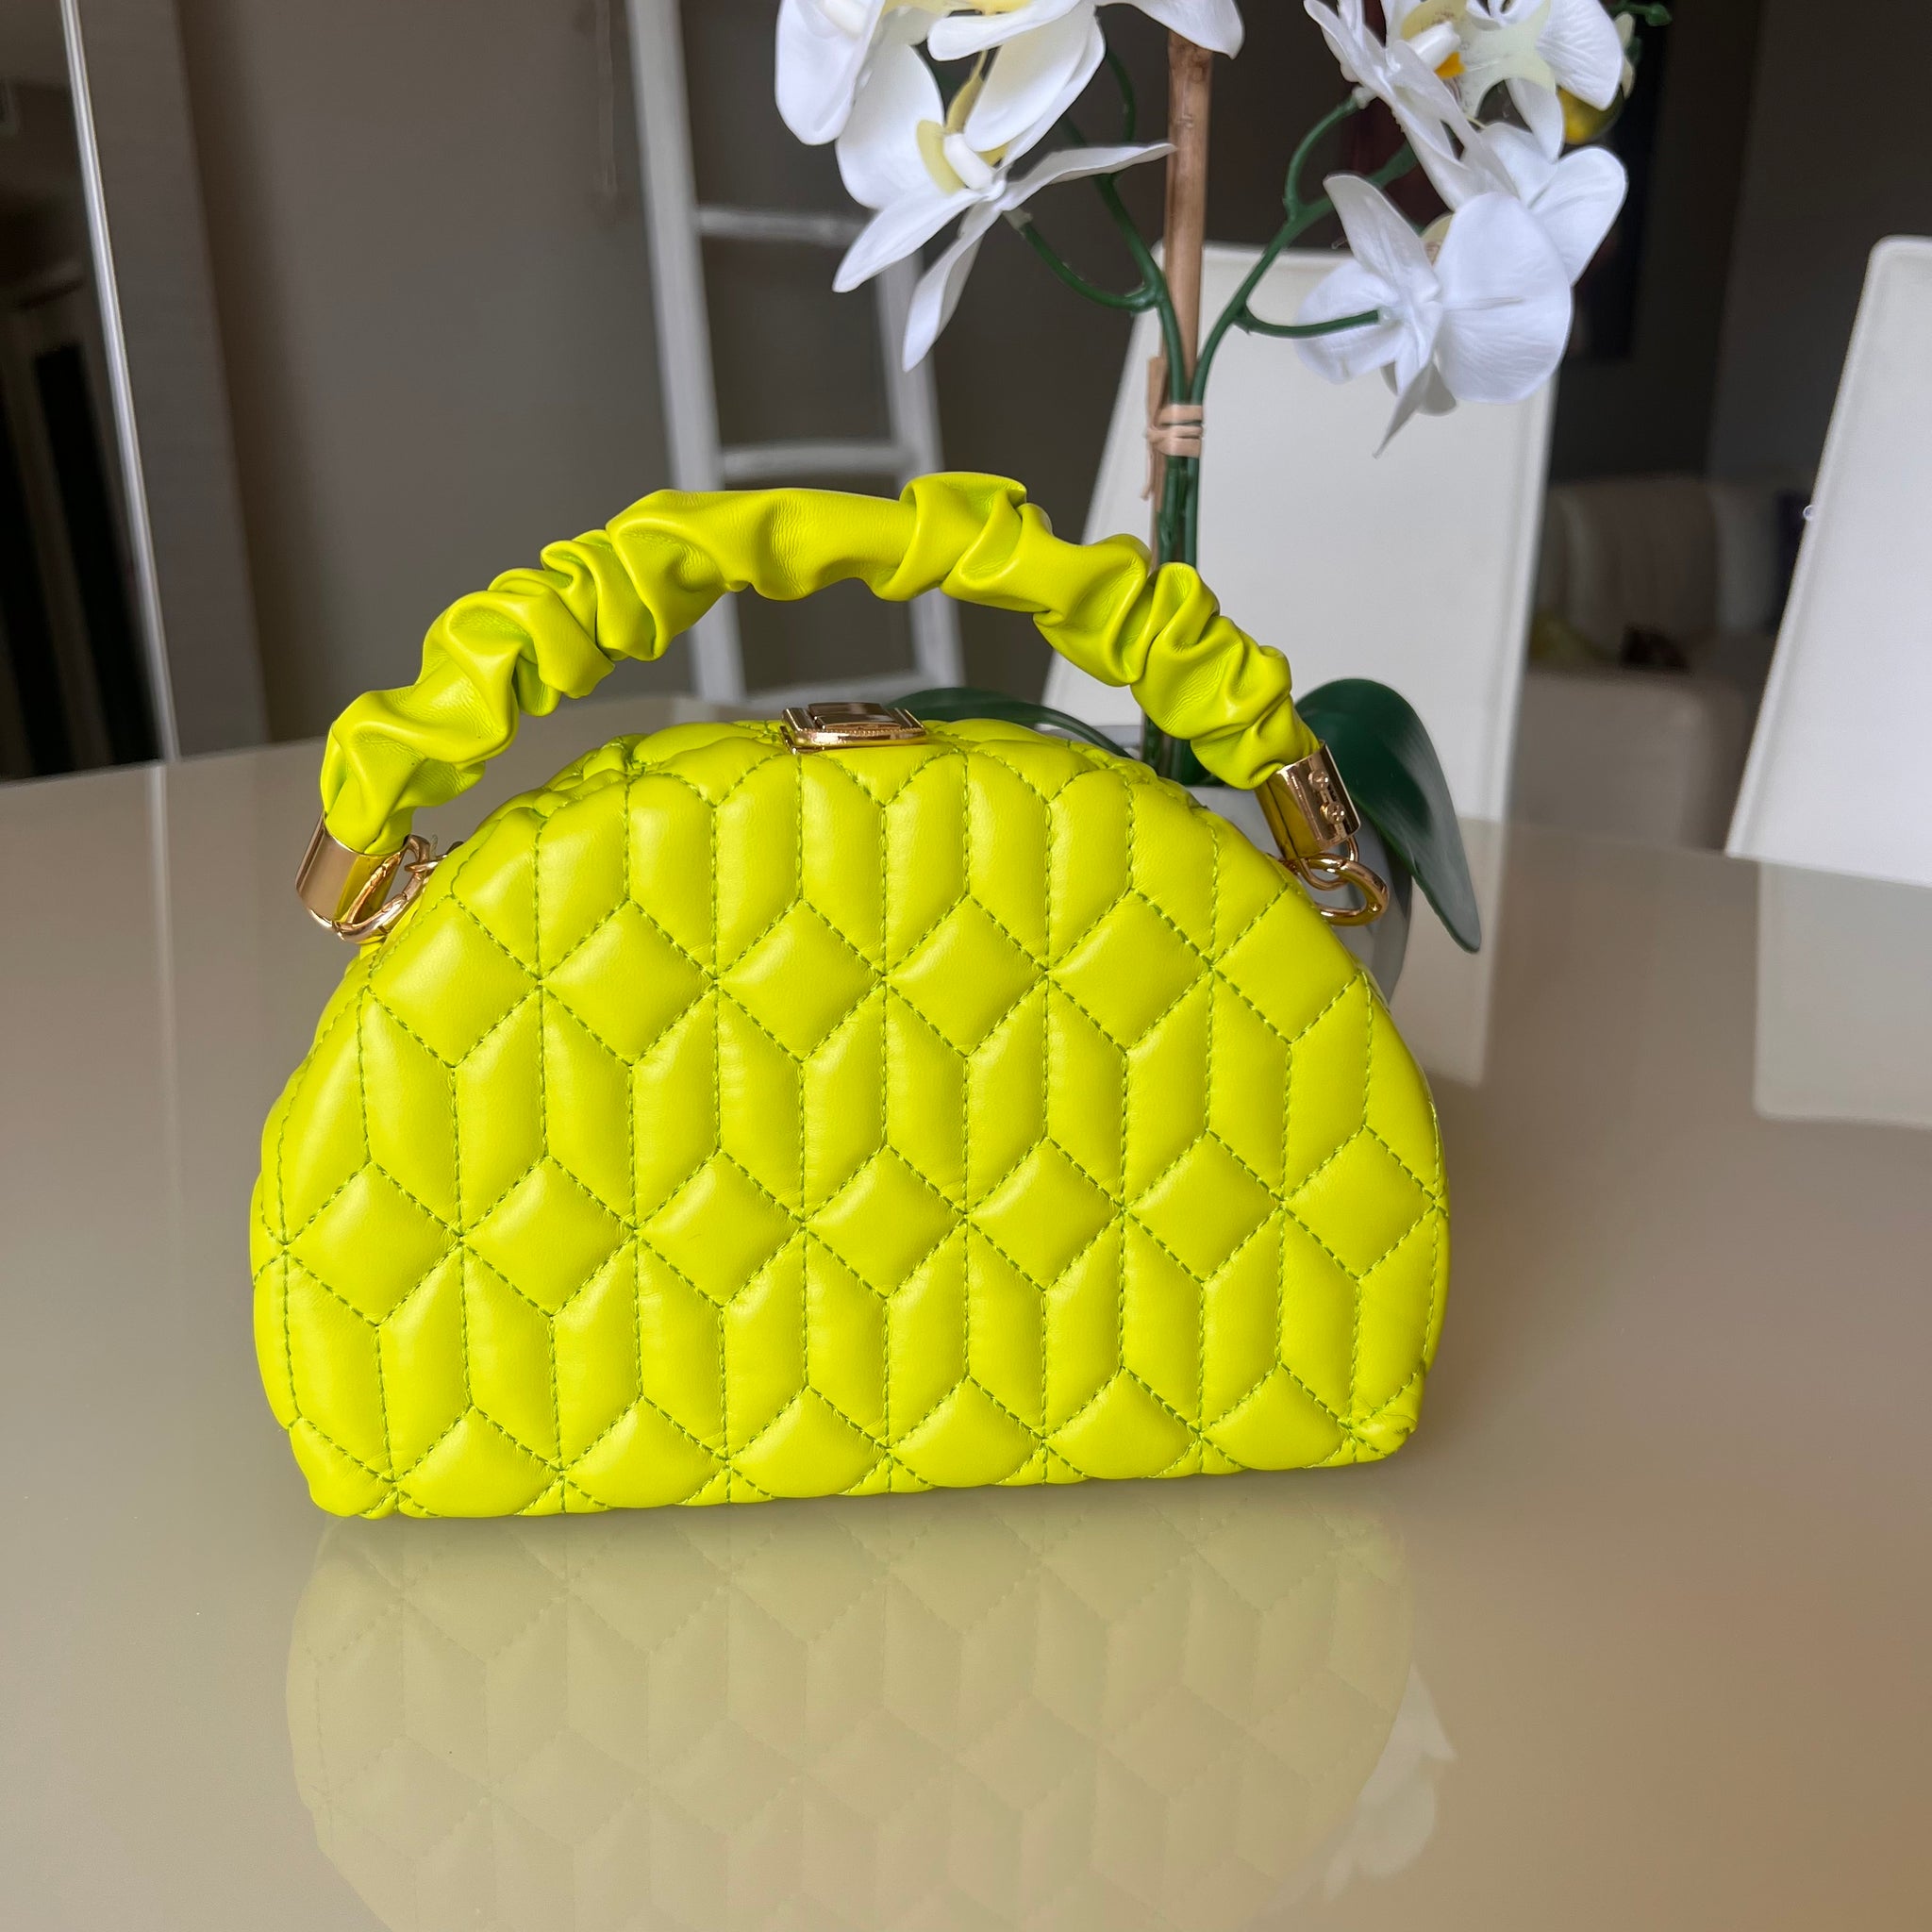 Diy Reversible scrunchie handbag/ DIY Trendy bags / Fabric bag - YouTube